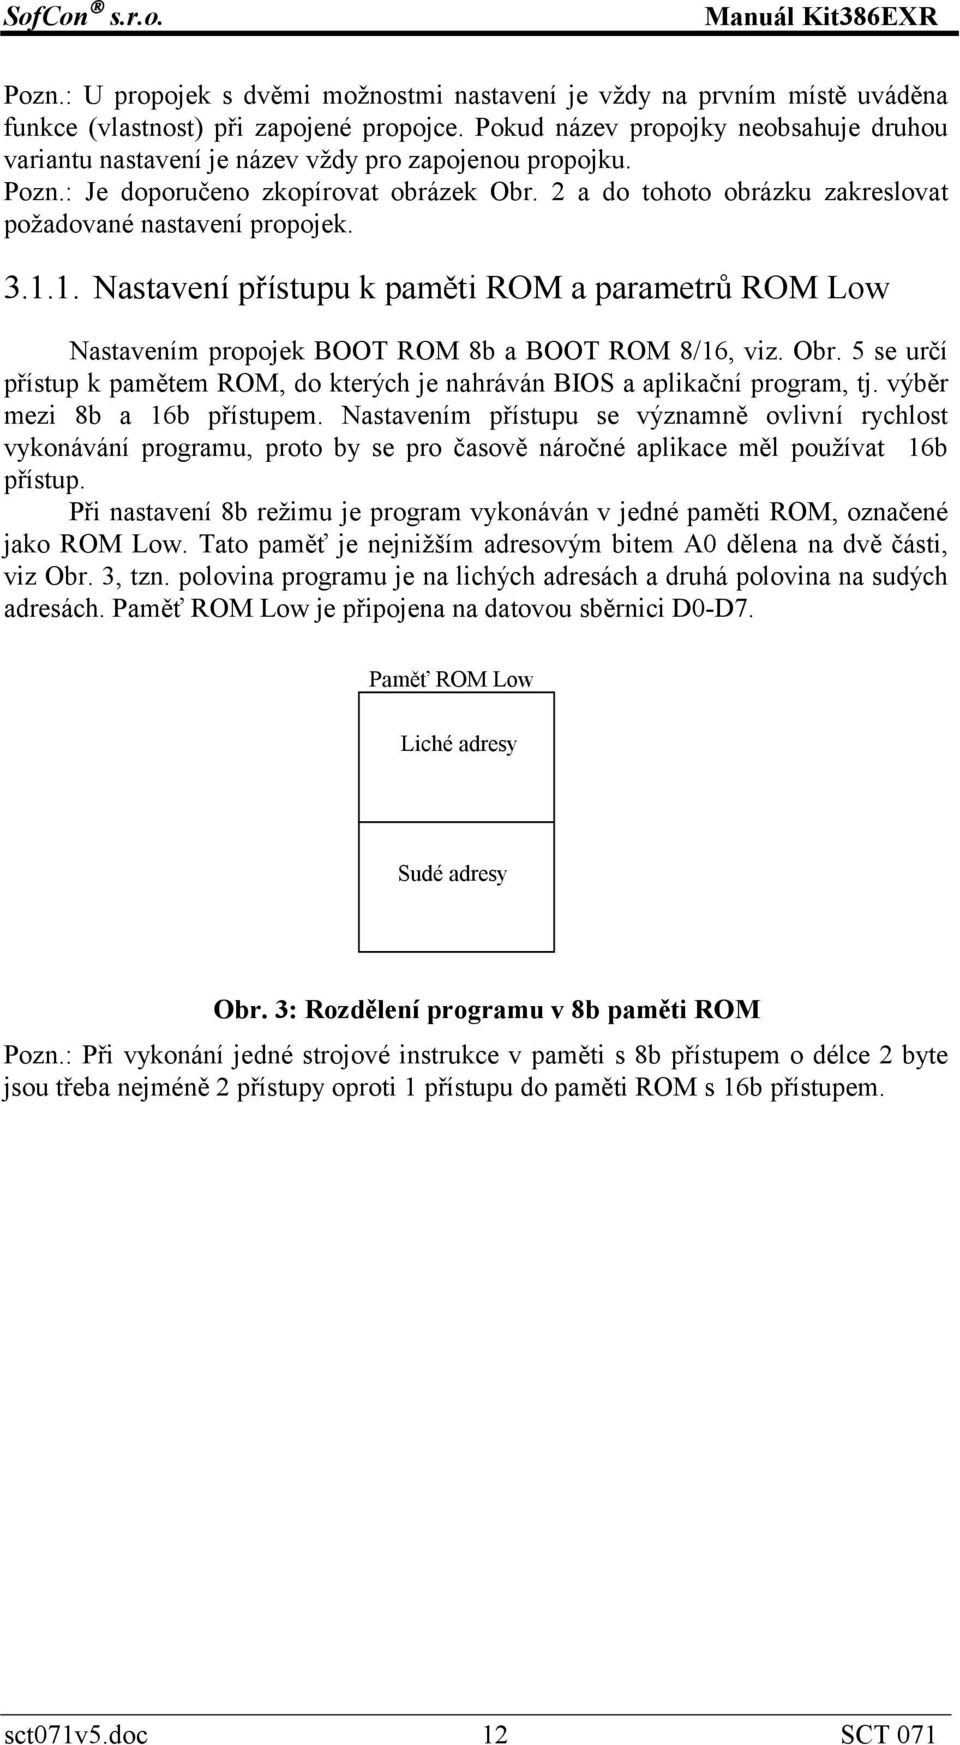 2 a do tohoto obrázku zakreslovat požadované nastavení propojek. 3.1.1. Nastavení přístupu k paměti ROM a parametrů ROM Low Nastavením propojek BOOT ROM 8b a BOOT ROM 8/16, viz. Obr.